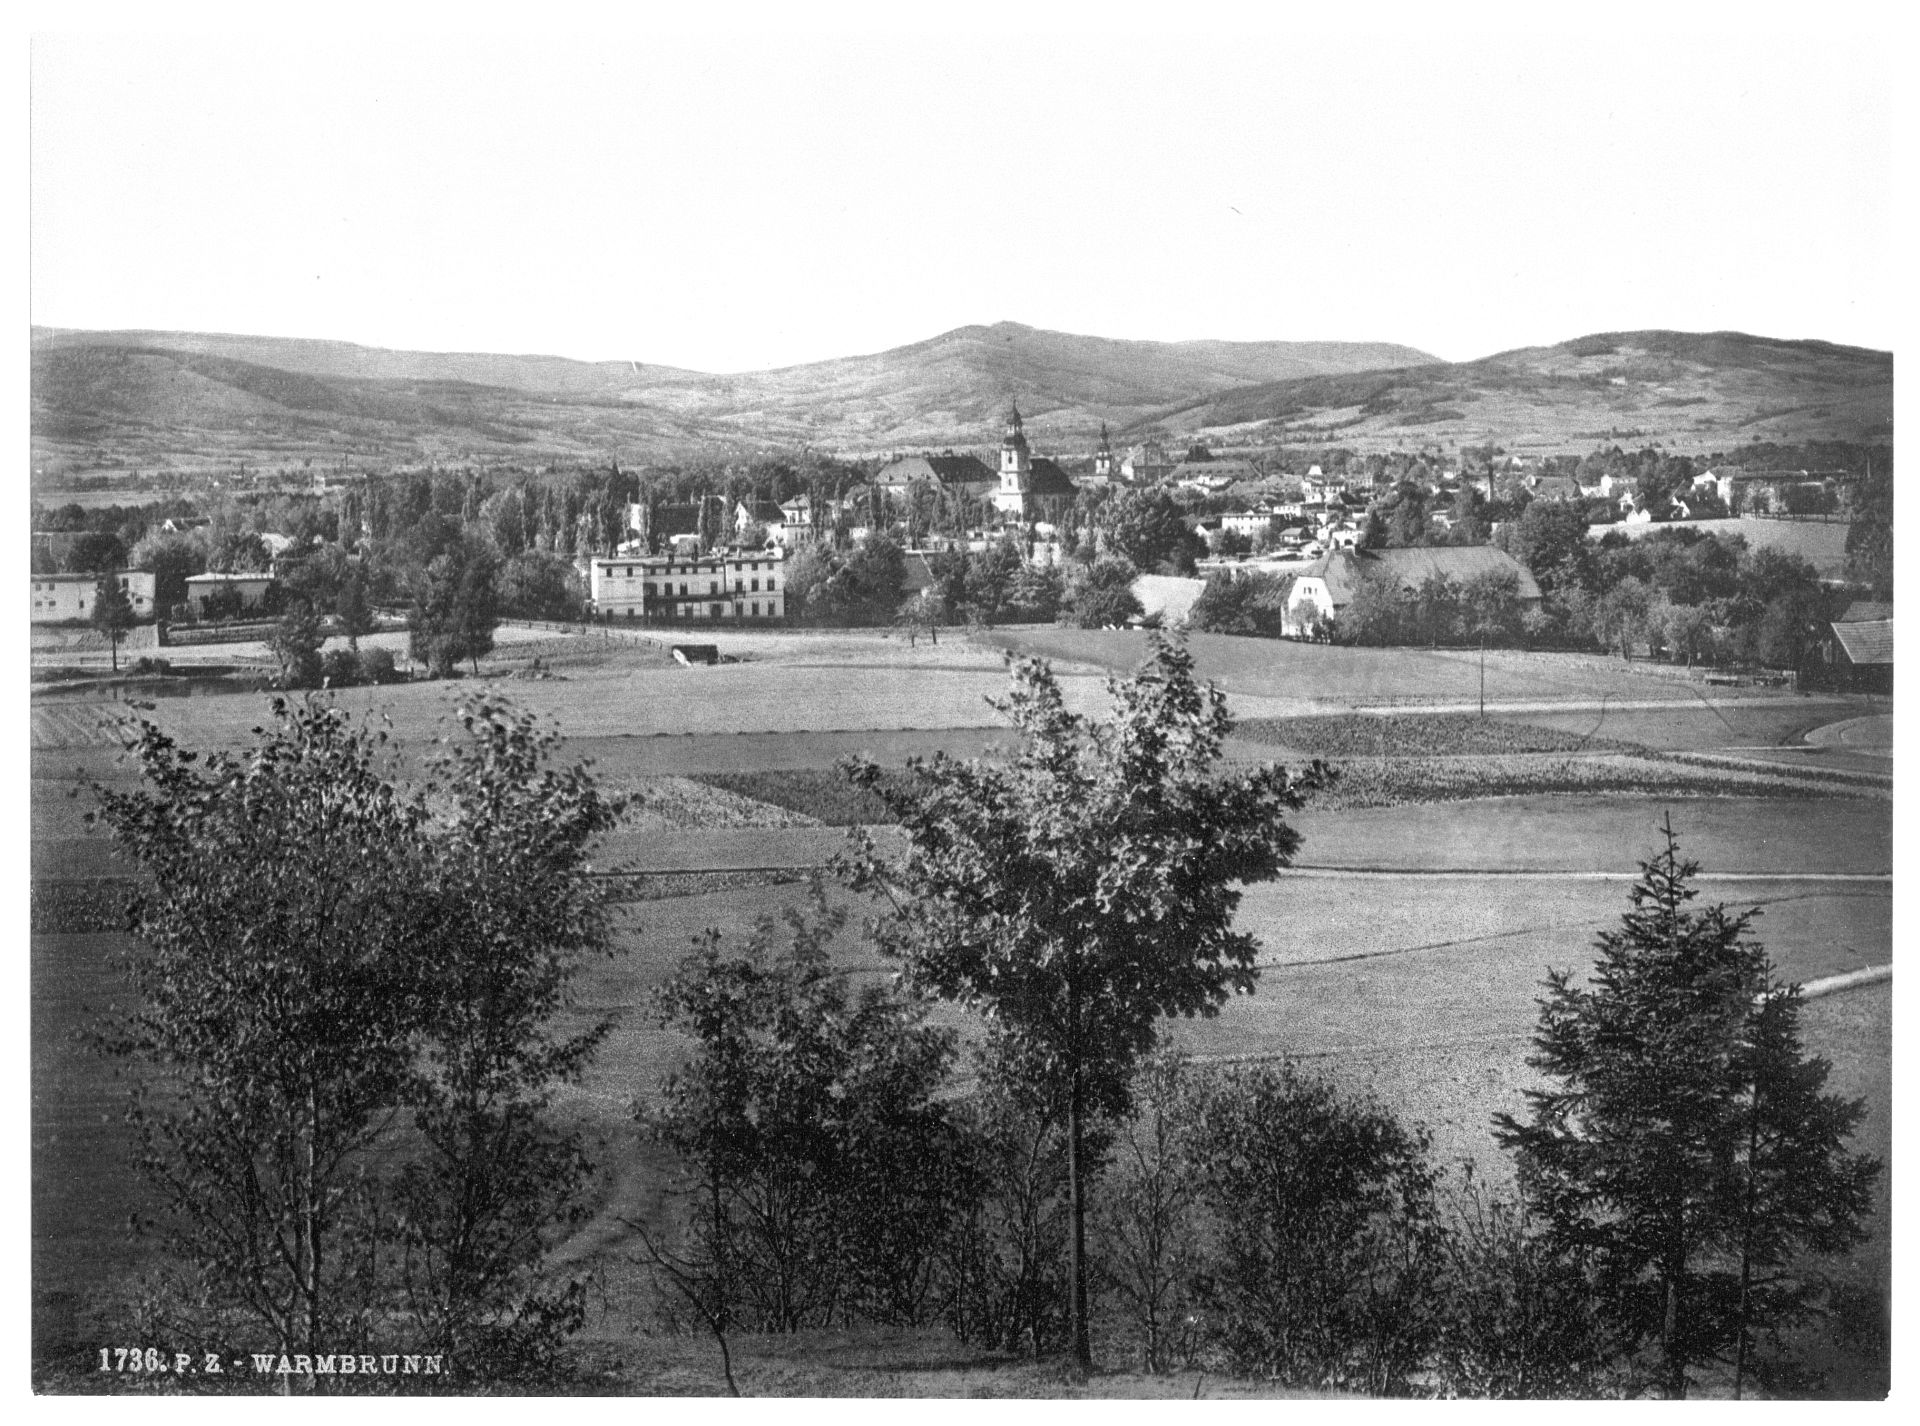 General view, Warmbrunn, Riesengebirge, Germany (i.e., Cieplice Śląskie-Zdrój, Poland)